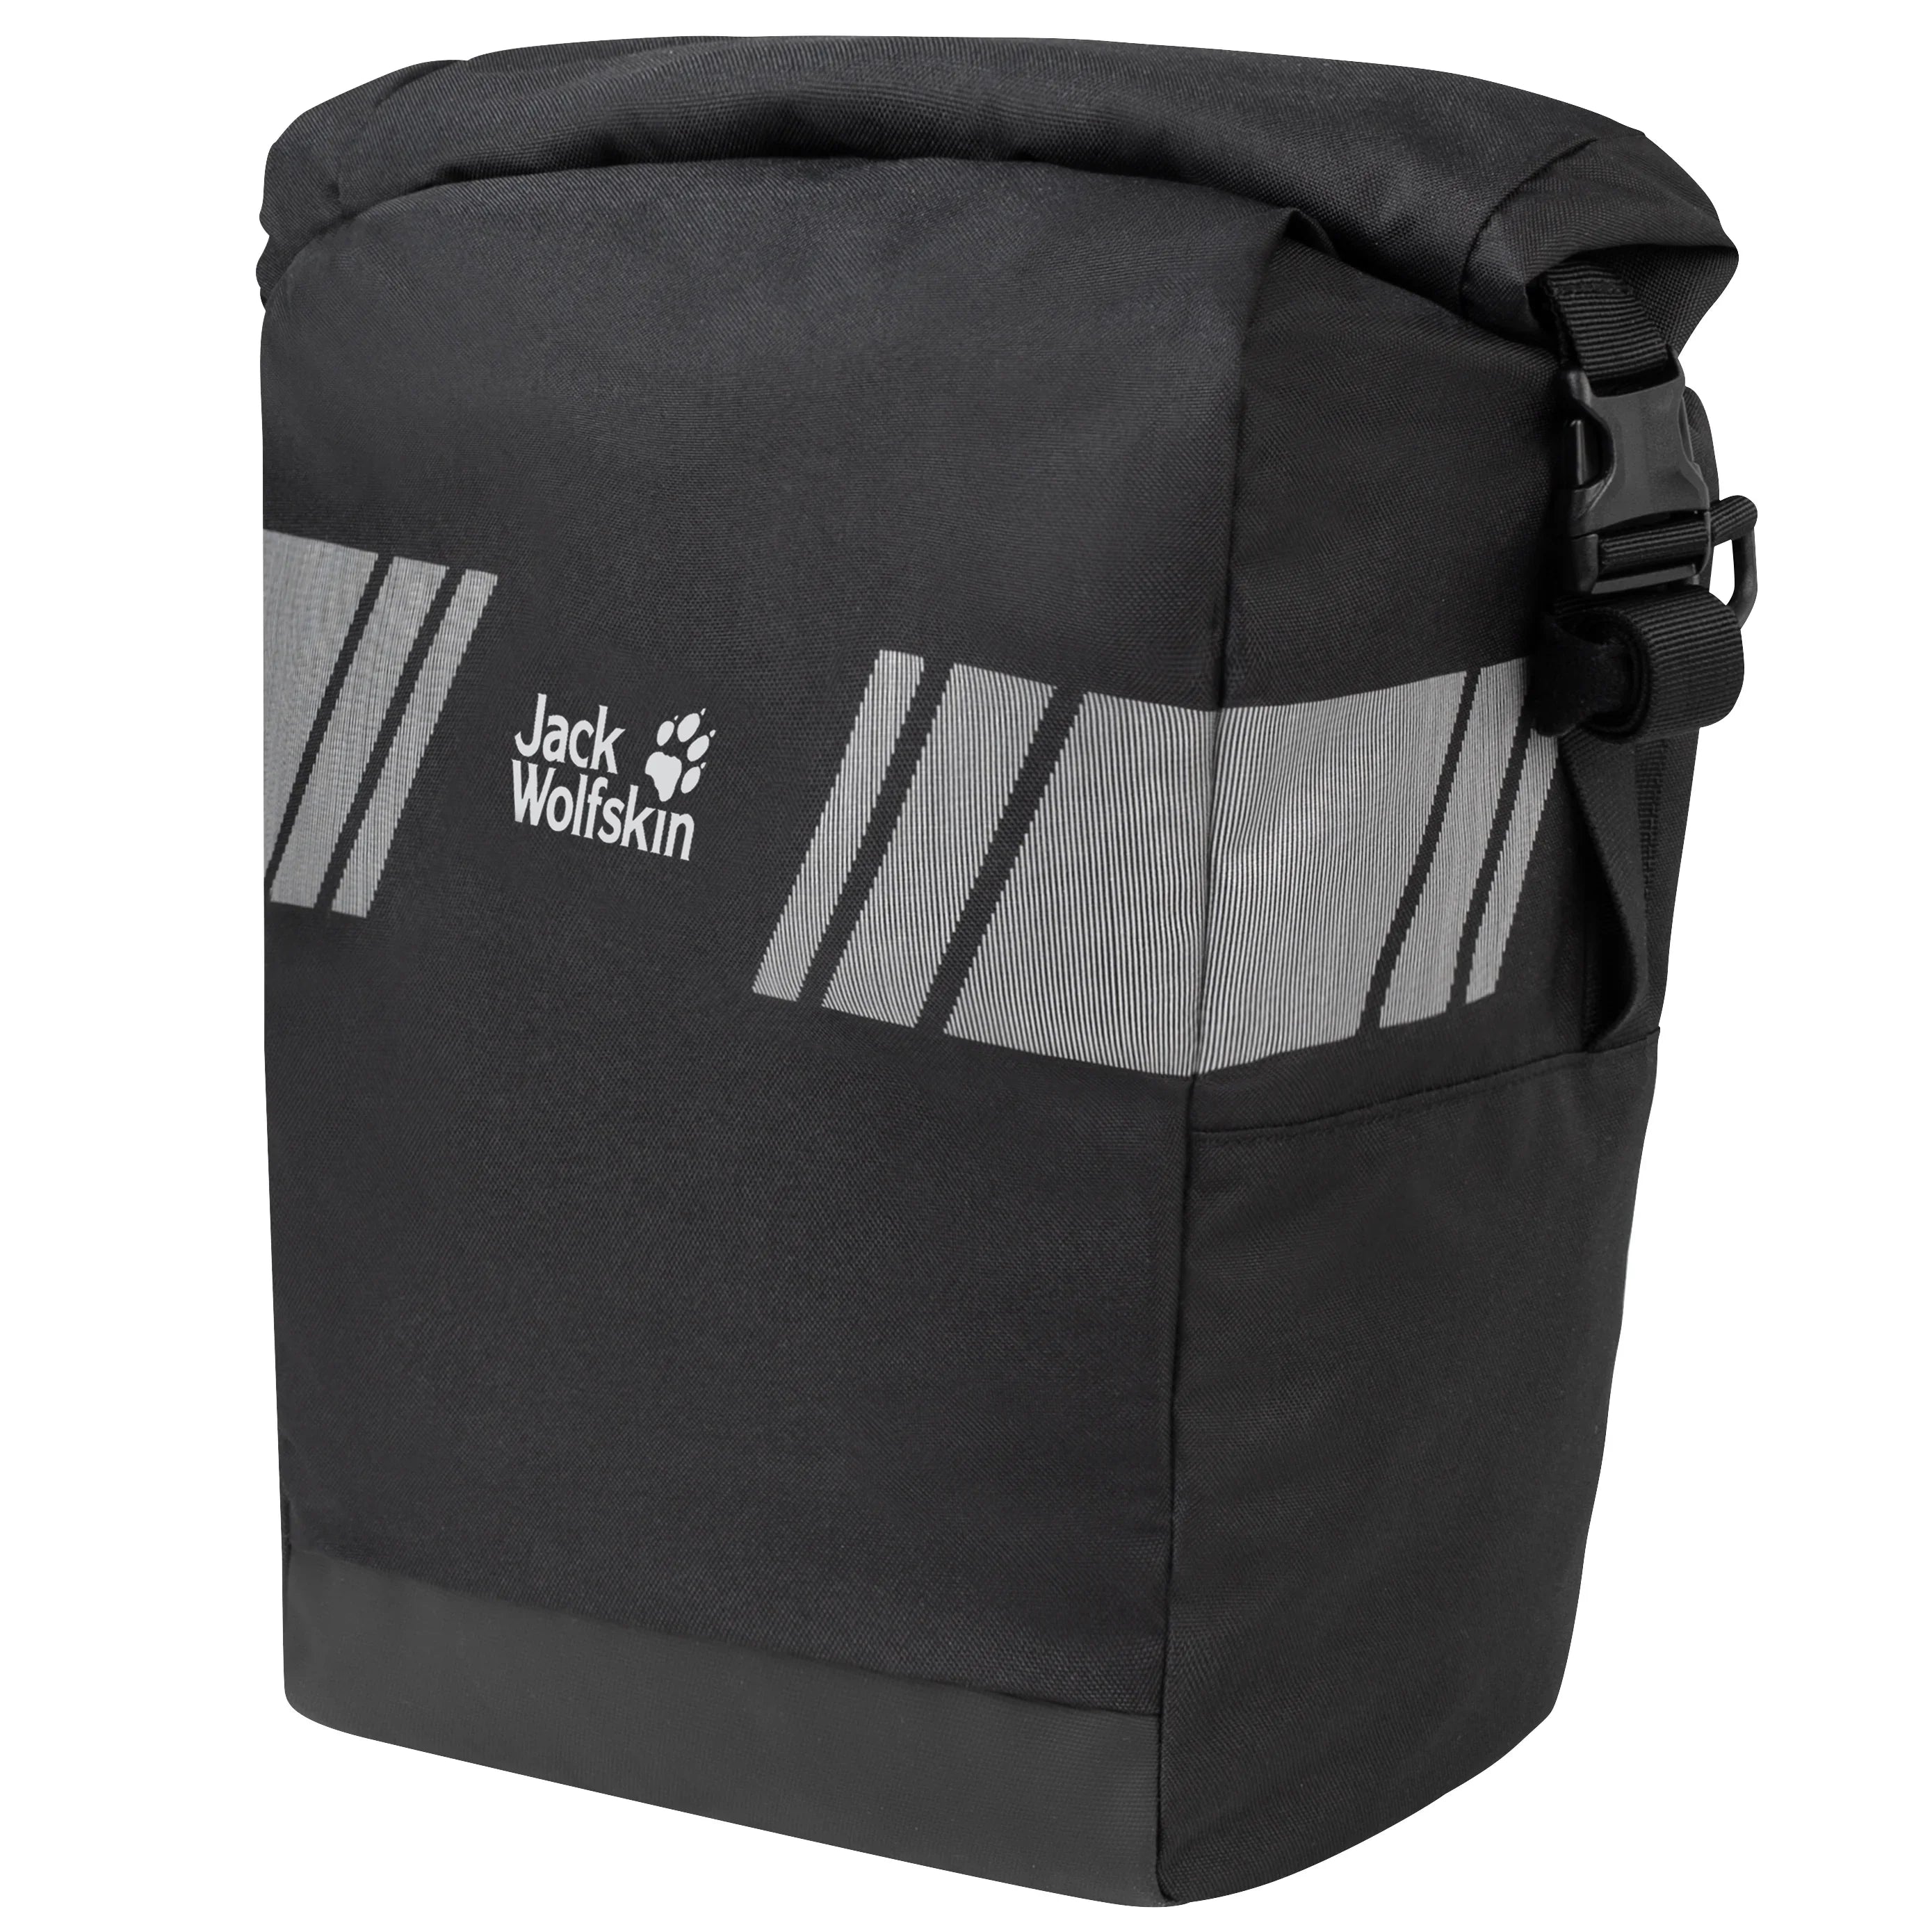 Jack Wolfskin Daypacks &amp; Bags Rack Bag Porte-Bagages Sac 34 cm - Flash Black